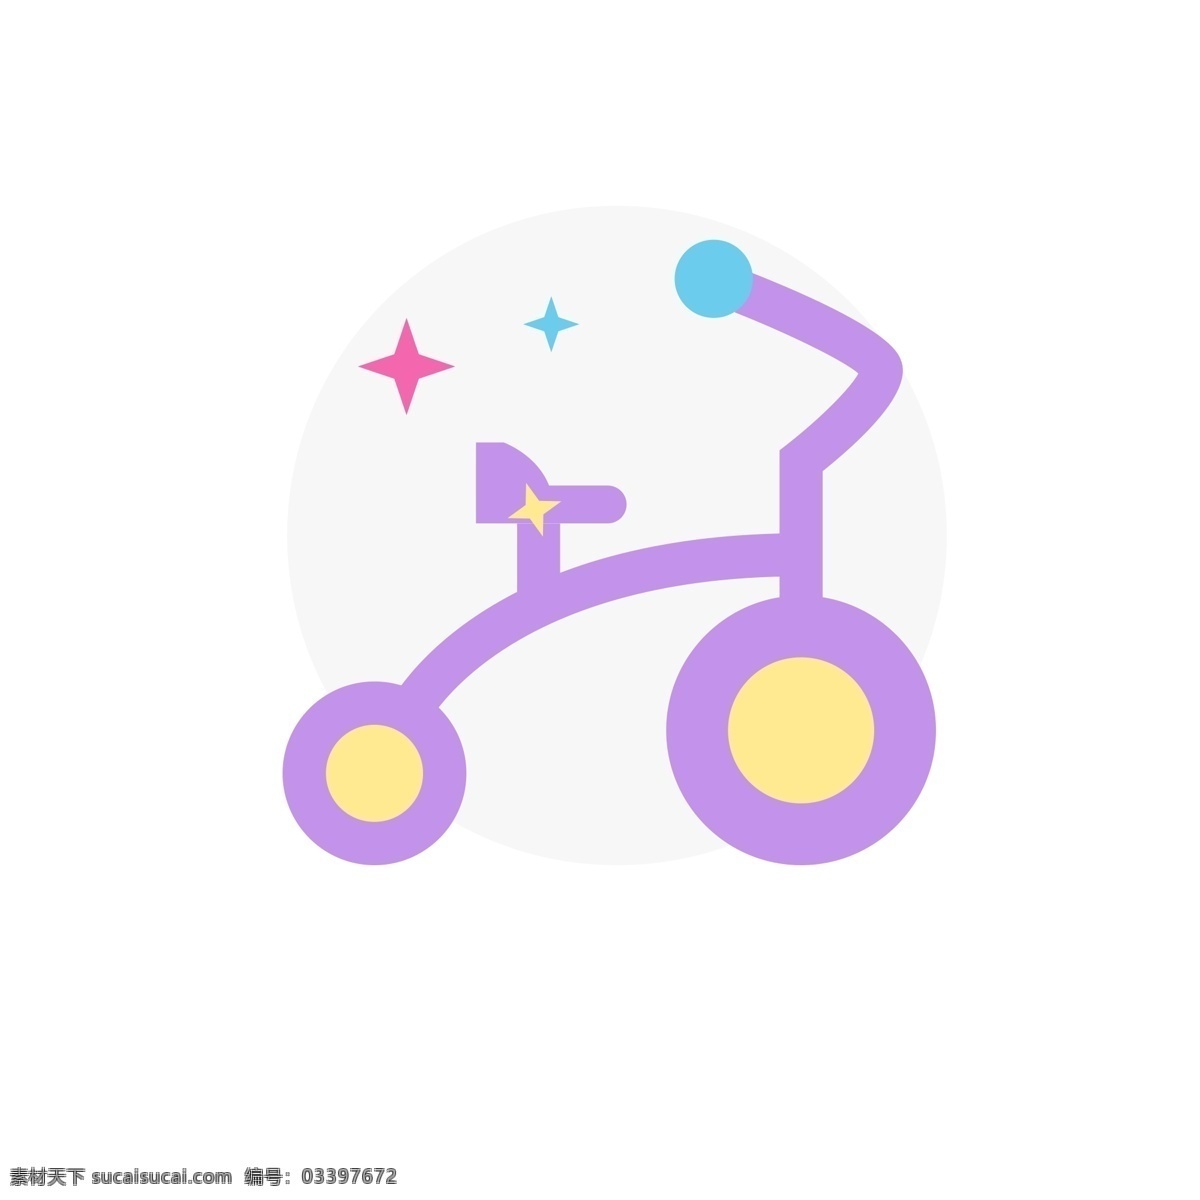 卡通 婴儿车 小车子 自行车图标 扁平化ui ui图标 手机图标 游戏ui 界面ui 网页ui h5图标